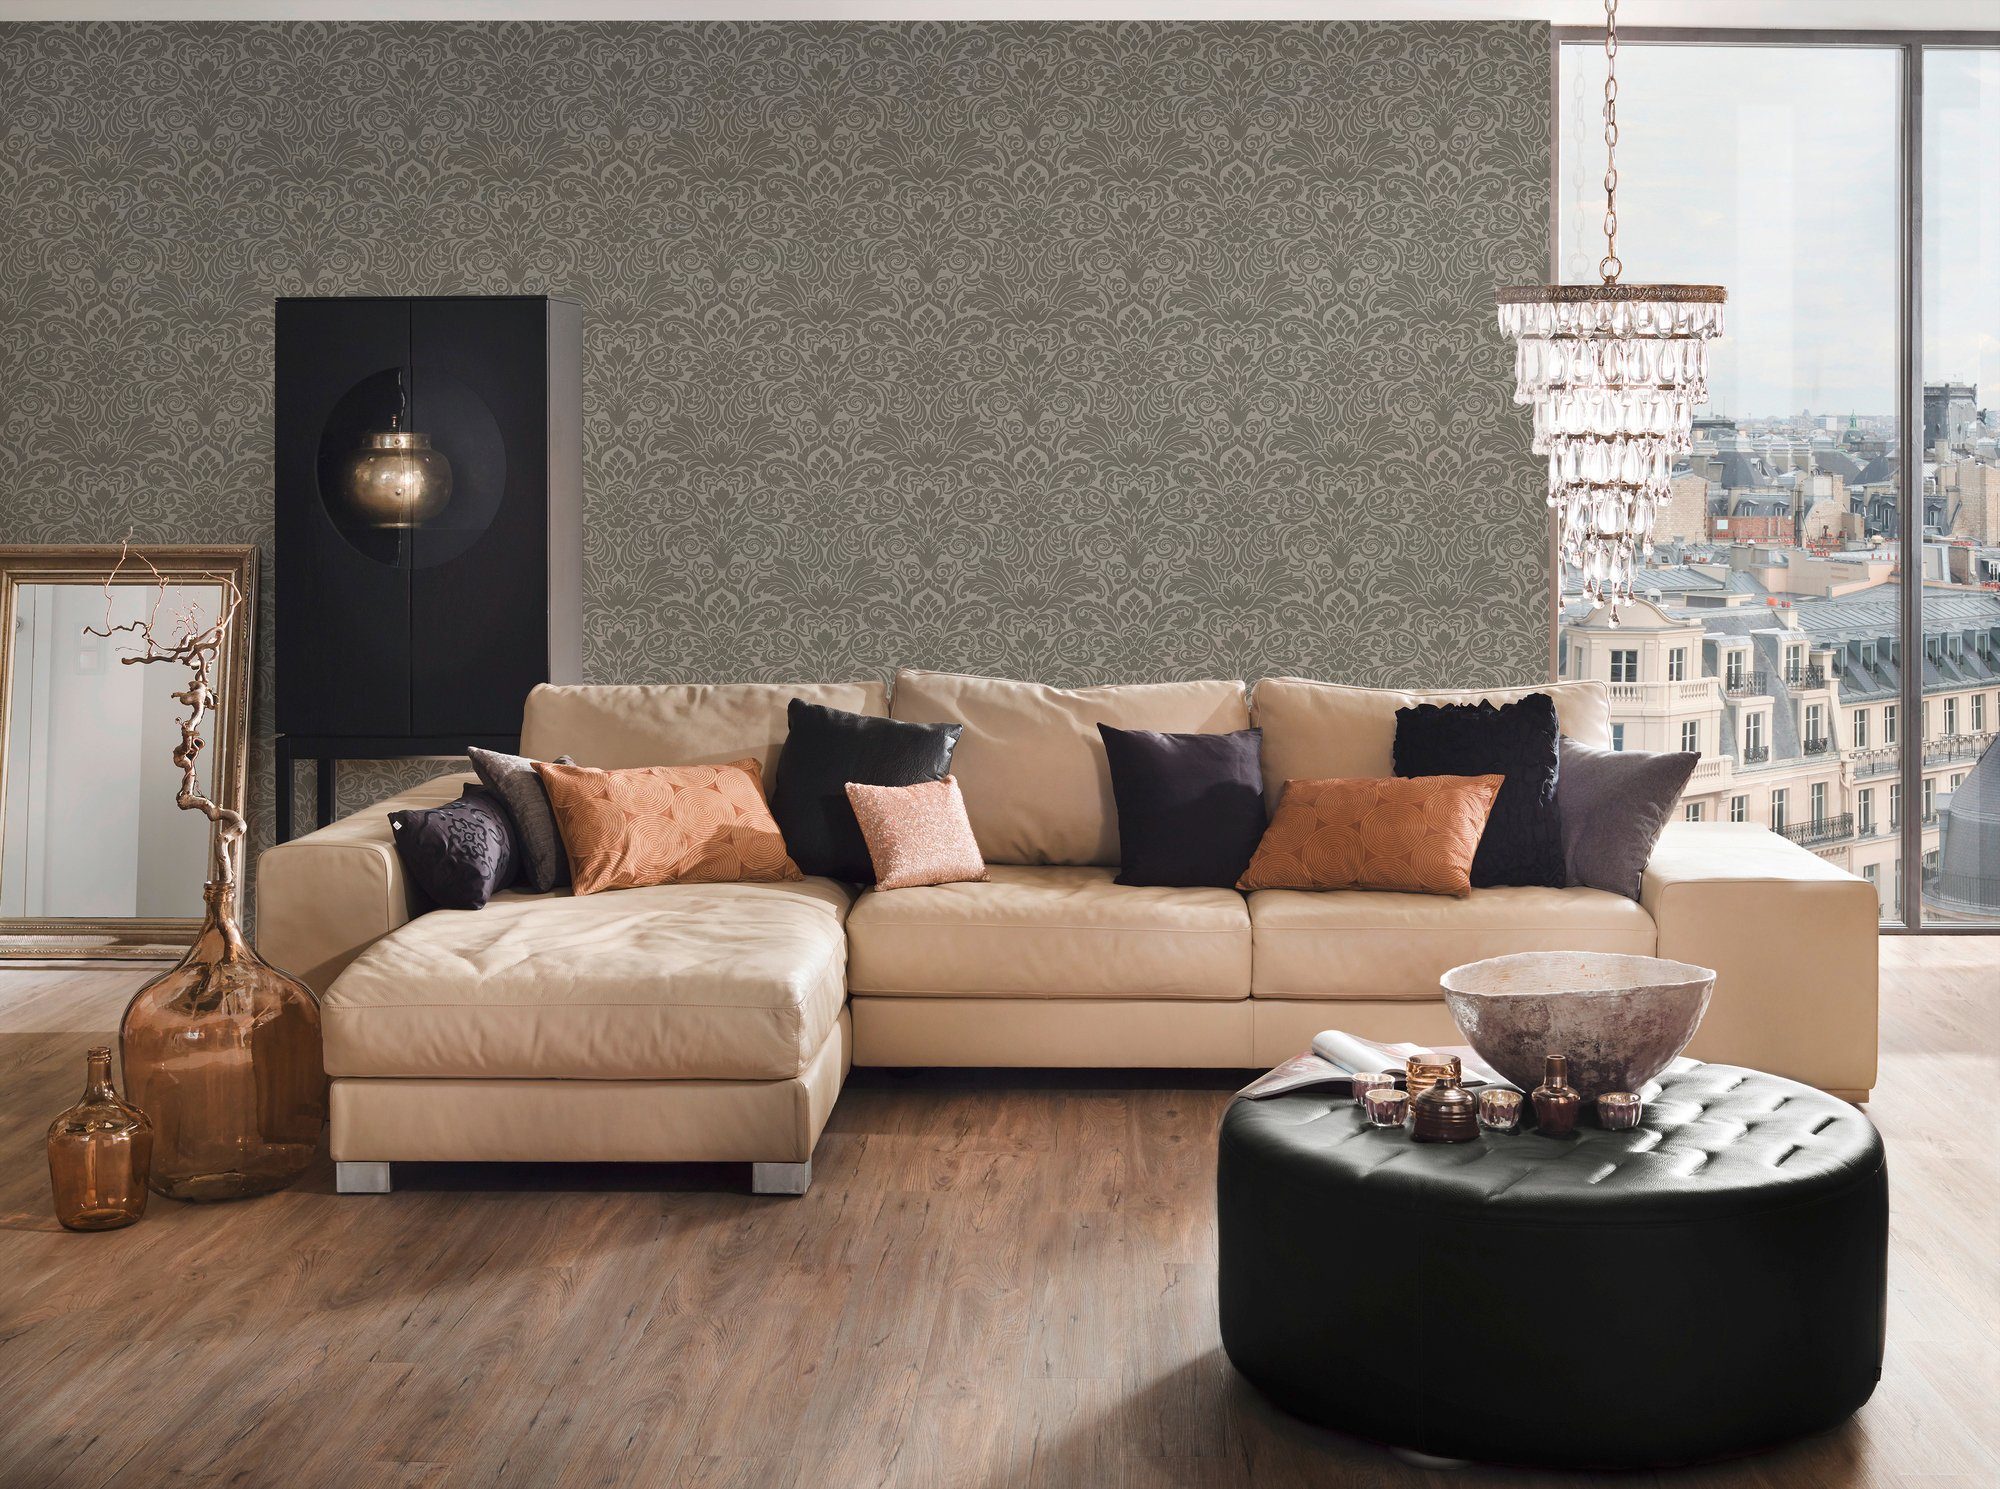 silberfarben/grau Luxury Architects Vliestapete Barock, wallpaper, Barock strukturiert, Ornament Tapete Paper